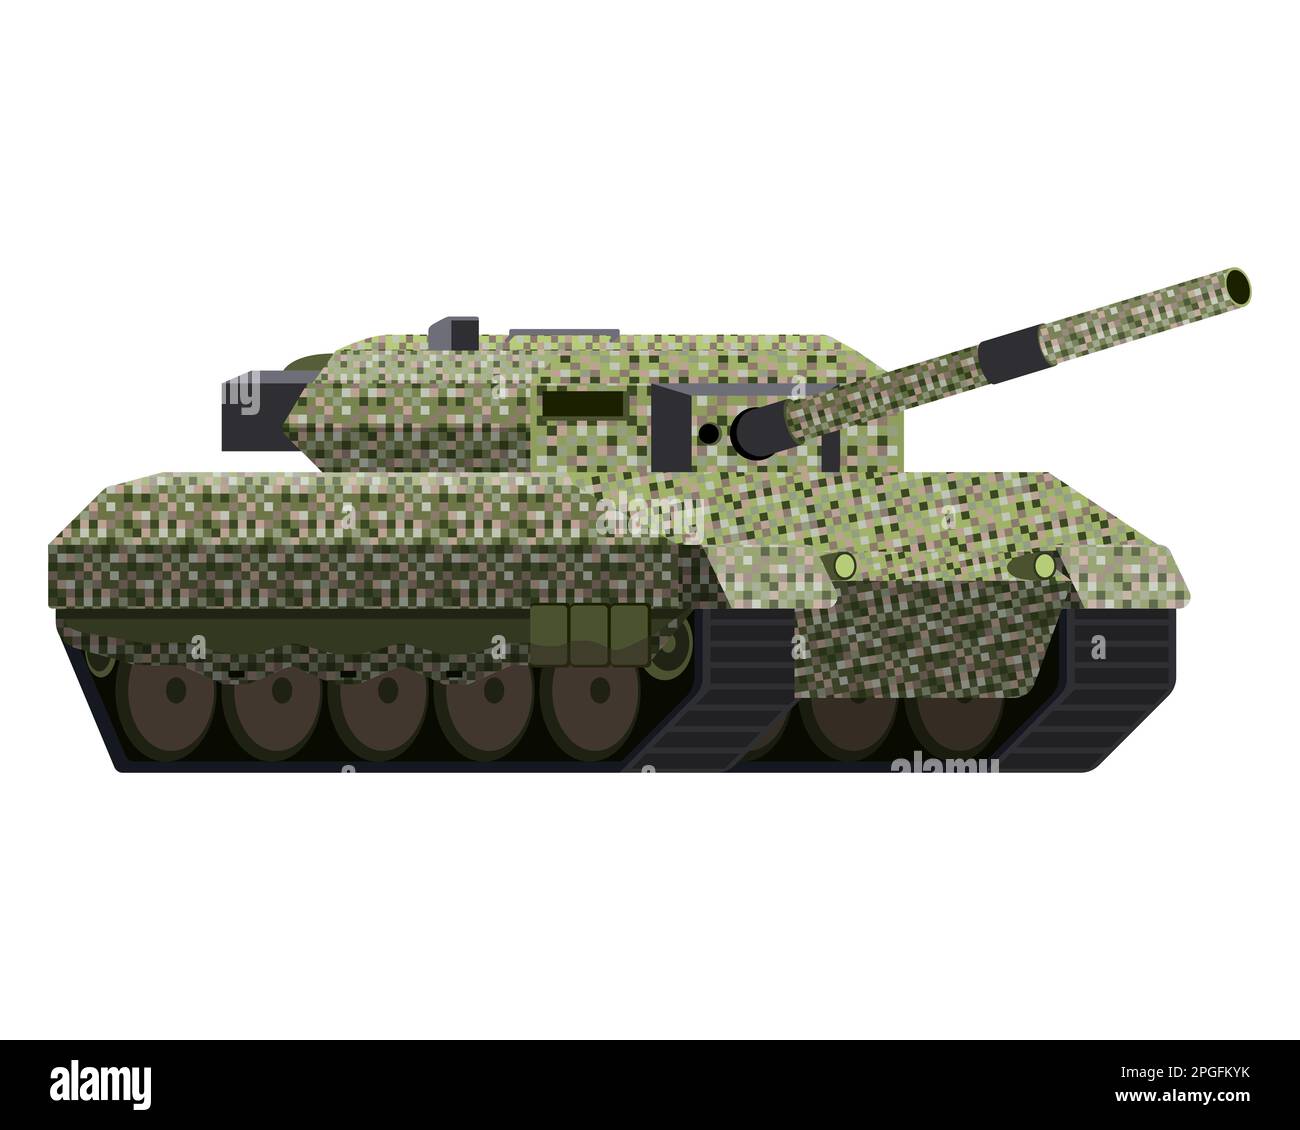 Das Haupt-Battle-Panzer im flachen Style. Militärfahrzeug. Pixeltarnung. Farbige Vektordarstellung isoliert auf weißem Hintergrund. Stock Vektor